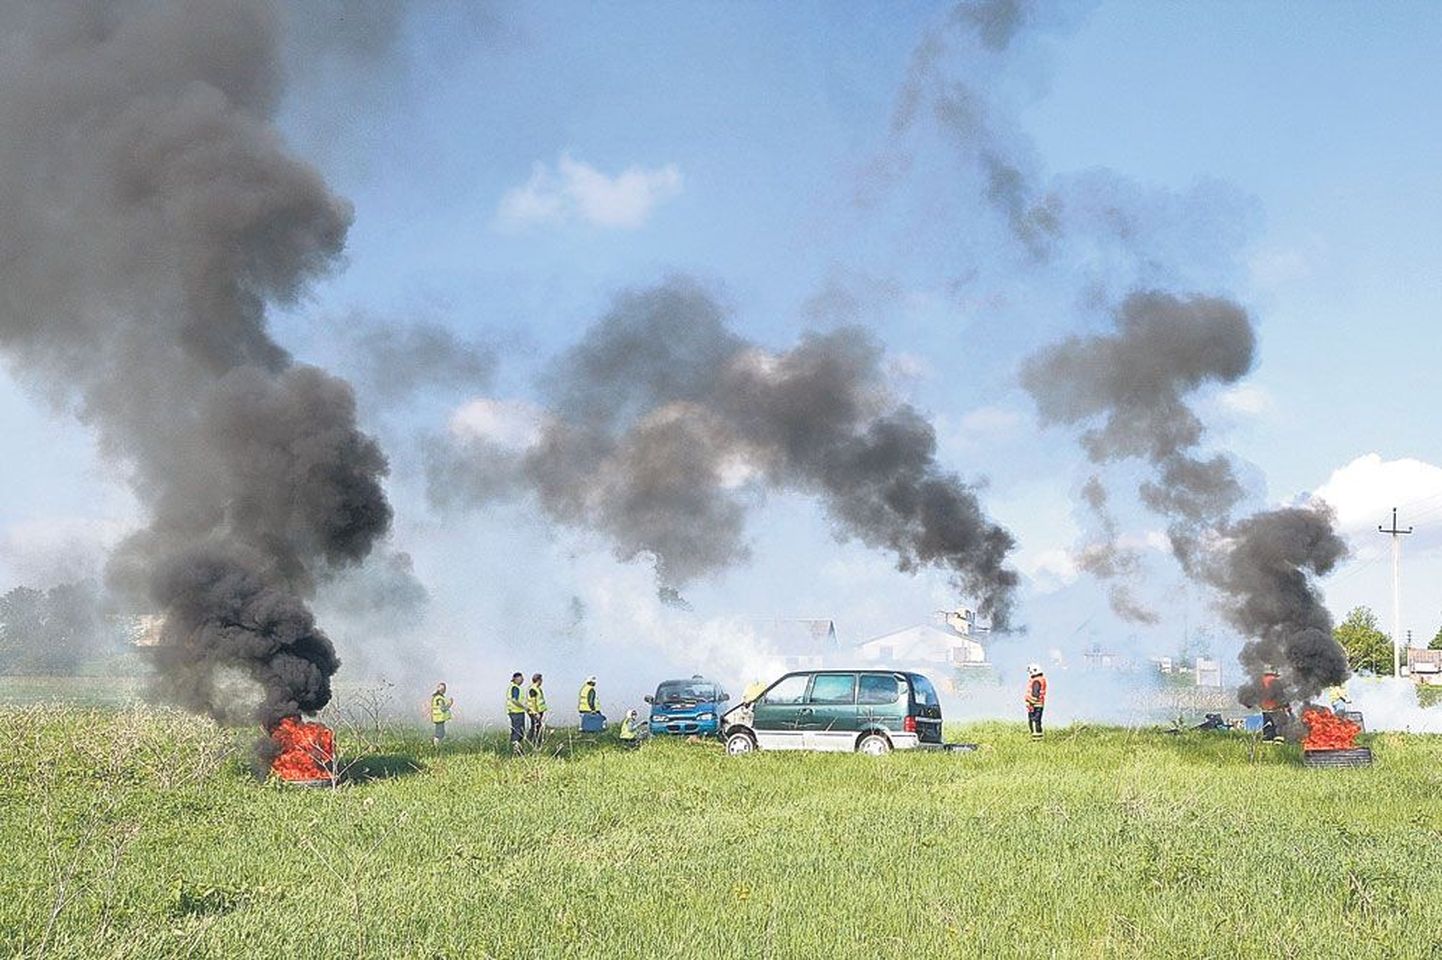 Lennuõnnetuse paigas tõusid taevasse suitsusambad, nende vahelt paistavad purunenud lennukit kehastanud autod.